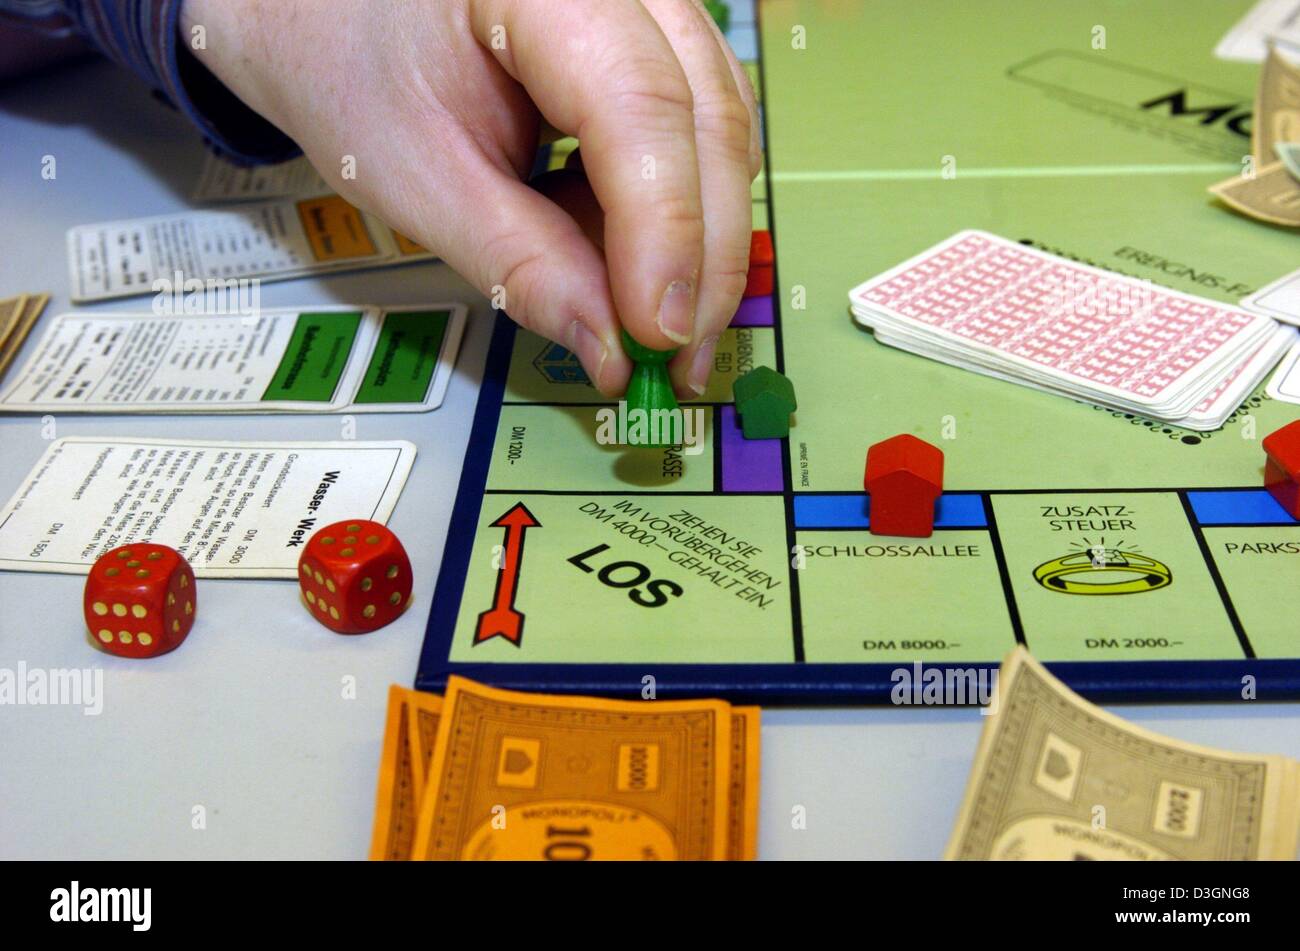 Menschen spielen (Dpa) - das berühmte Brettspiel "Monopol" in Dortmund,  Deutschland, 10. Februar 2004. Monopol gilt als beliebteste Brettspiel der  Welt. Heute ist es das meistverkaufte Brettspiel der Welt, in 80 Ländern